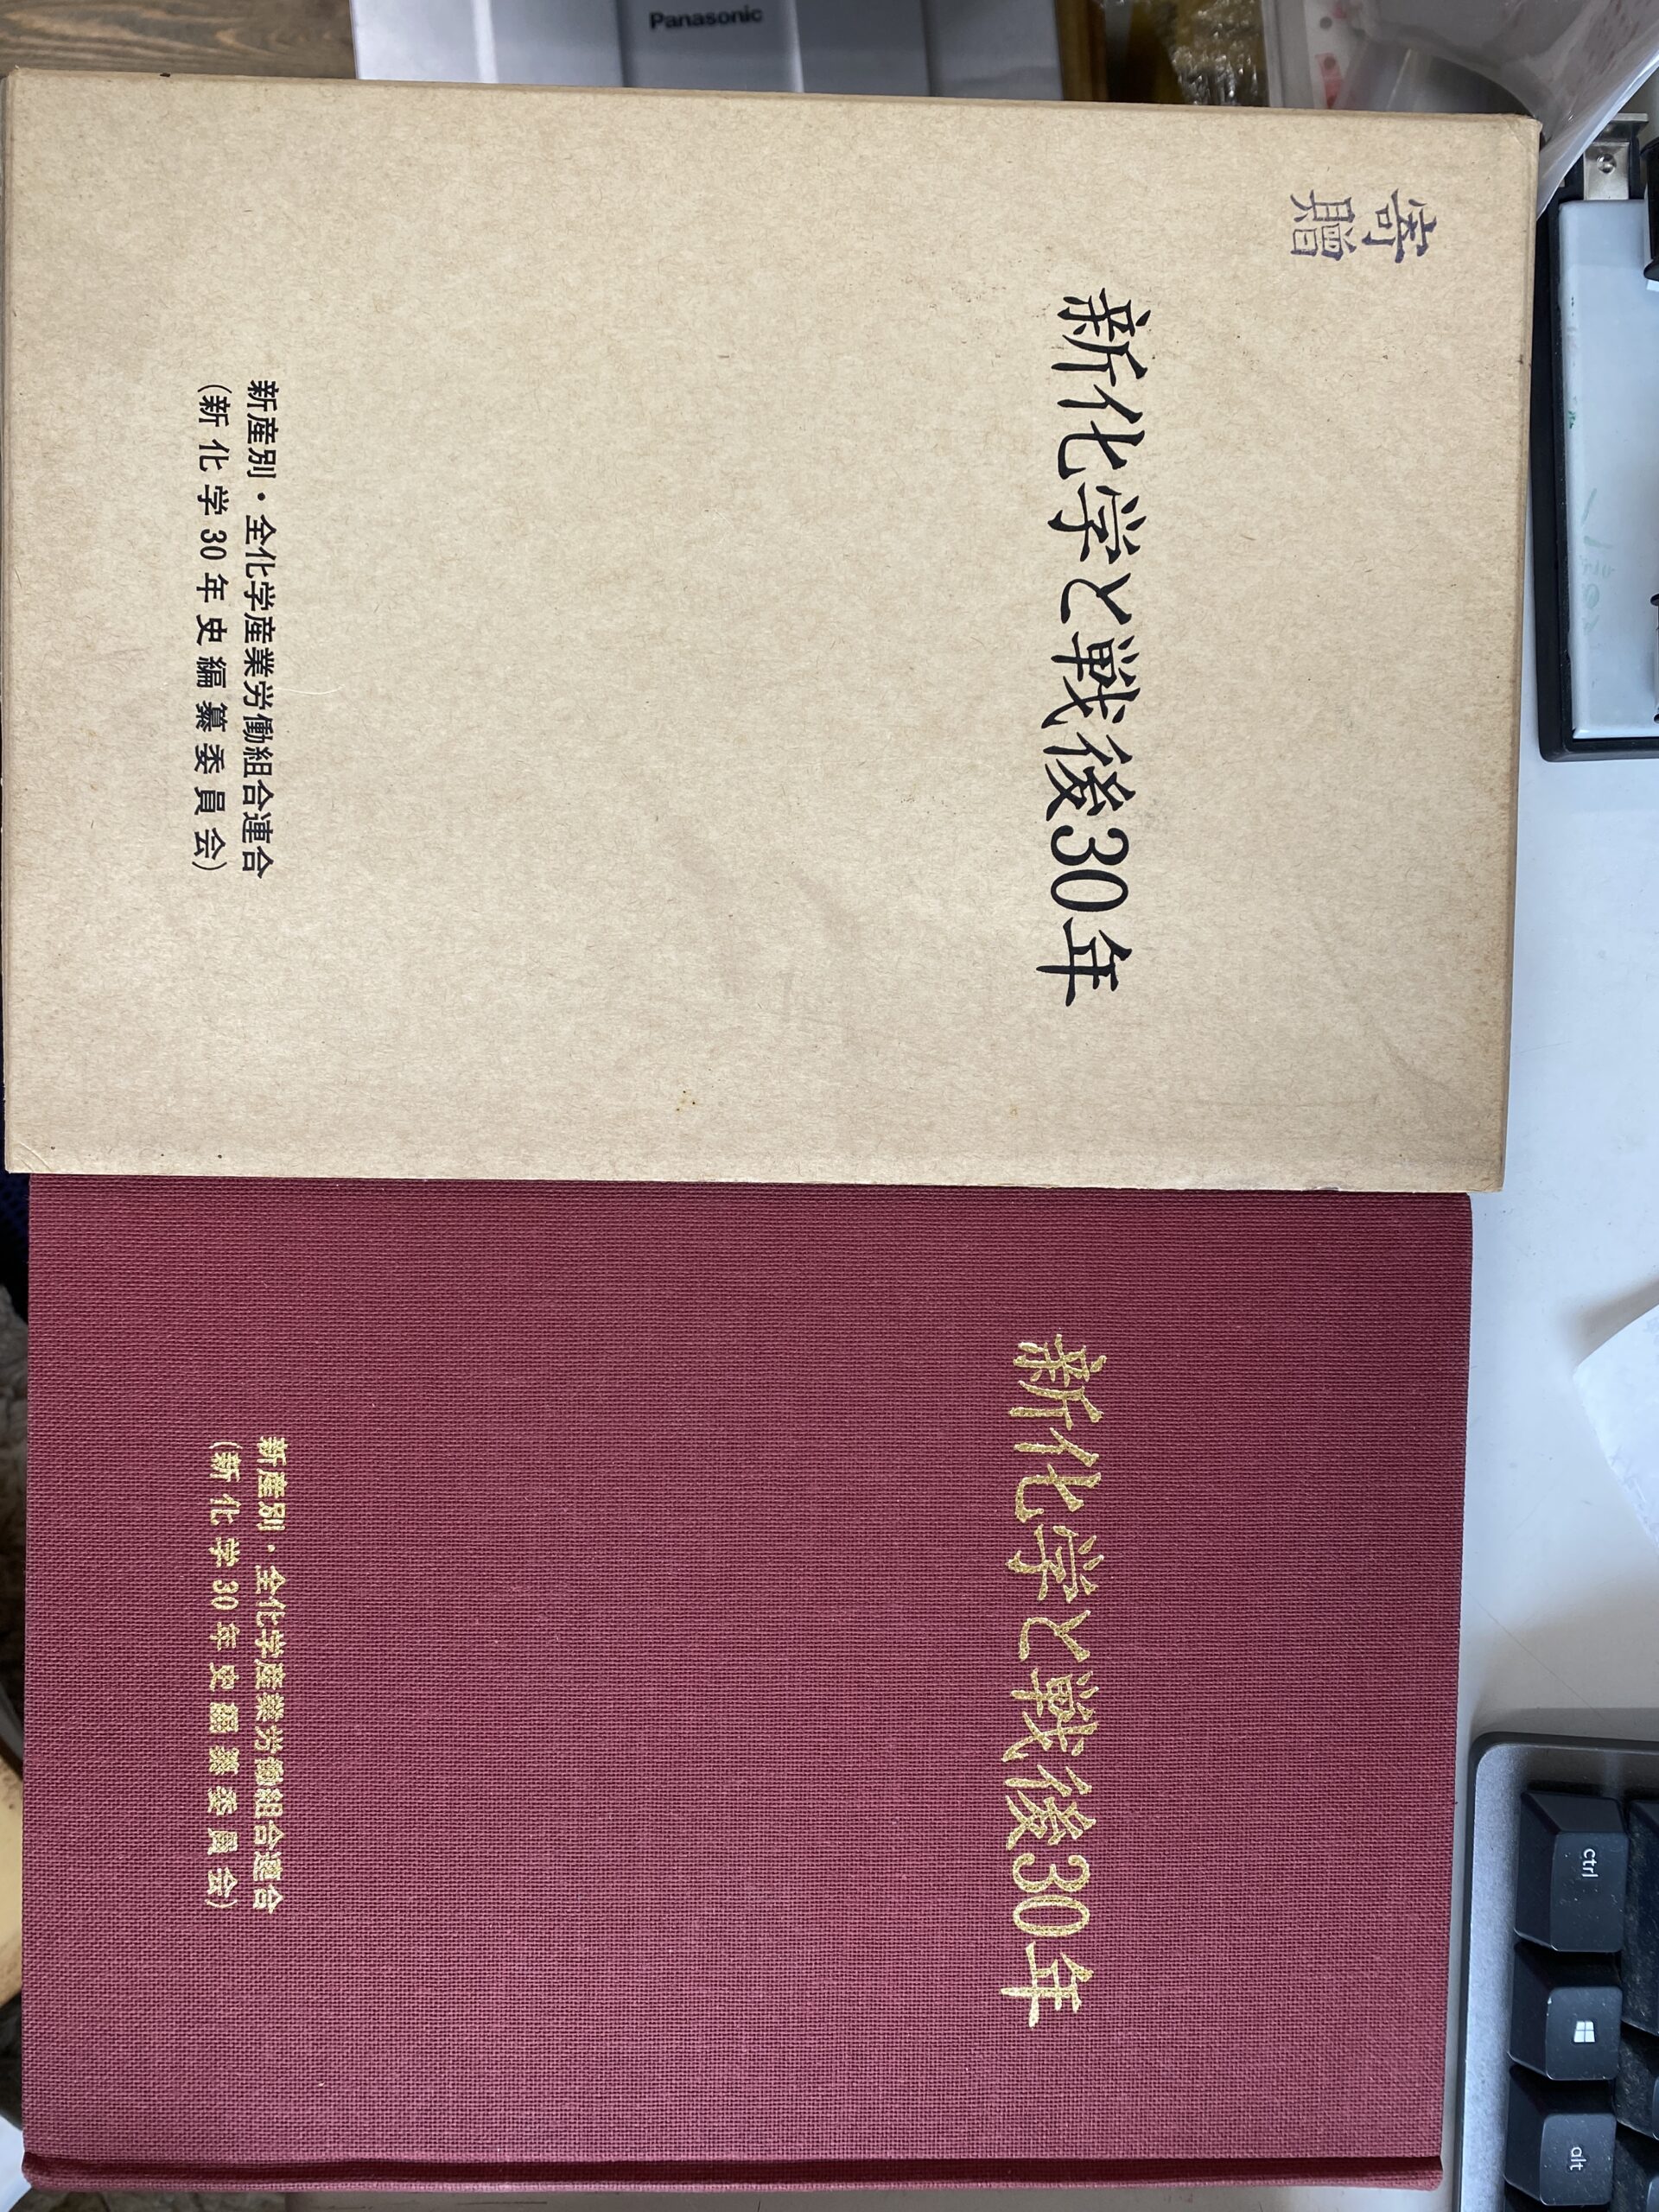 徳富蘇峰 終戦後日記 「頑蘇夢物語」 全４冊揃 徳富蘇峰 | 古本よみた屋 おじいさんの本、買います。